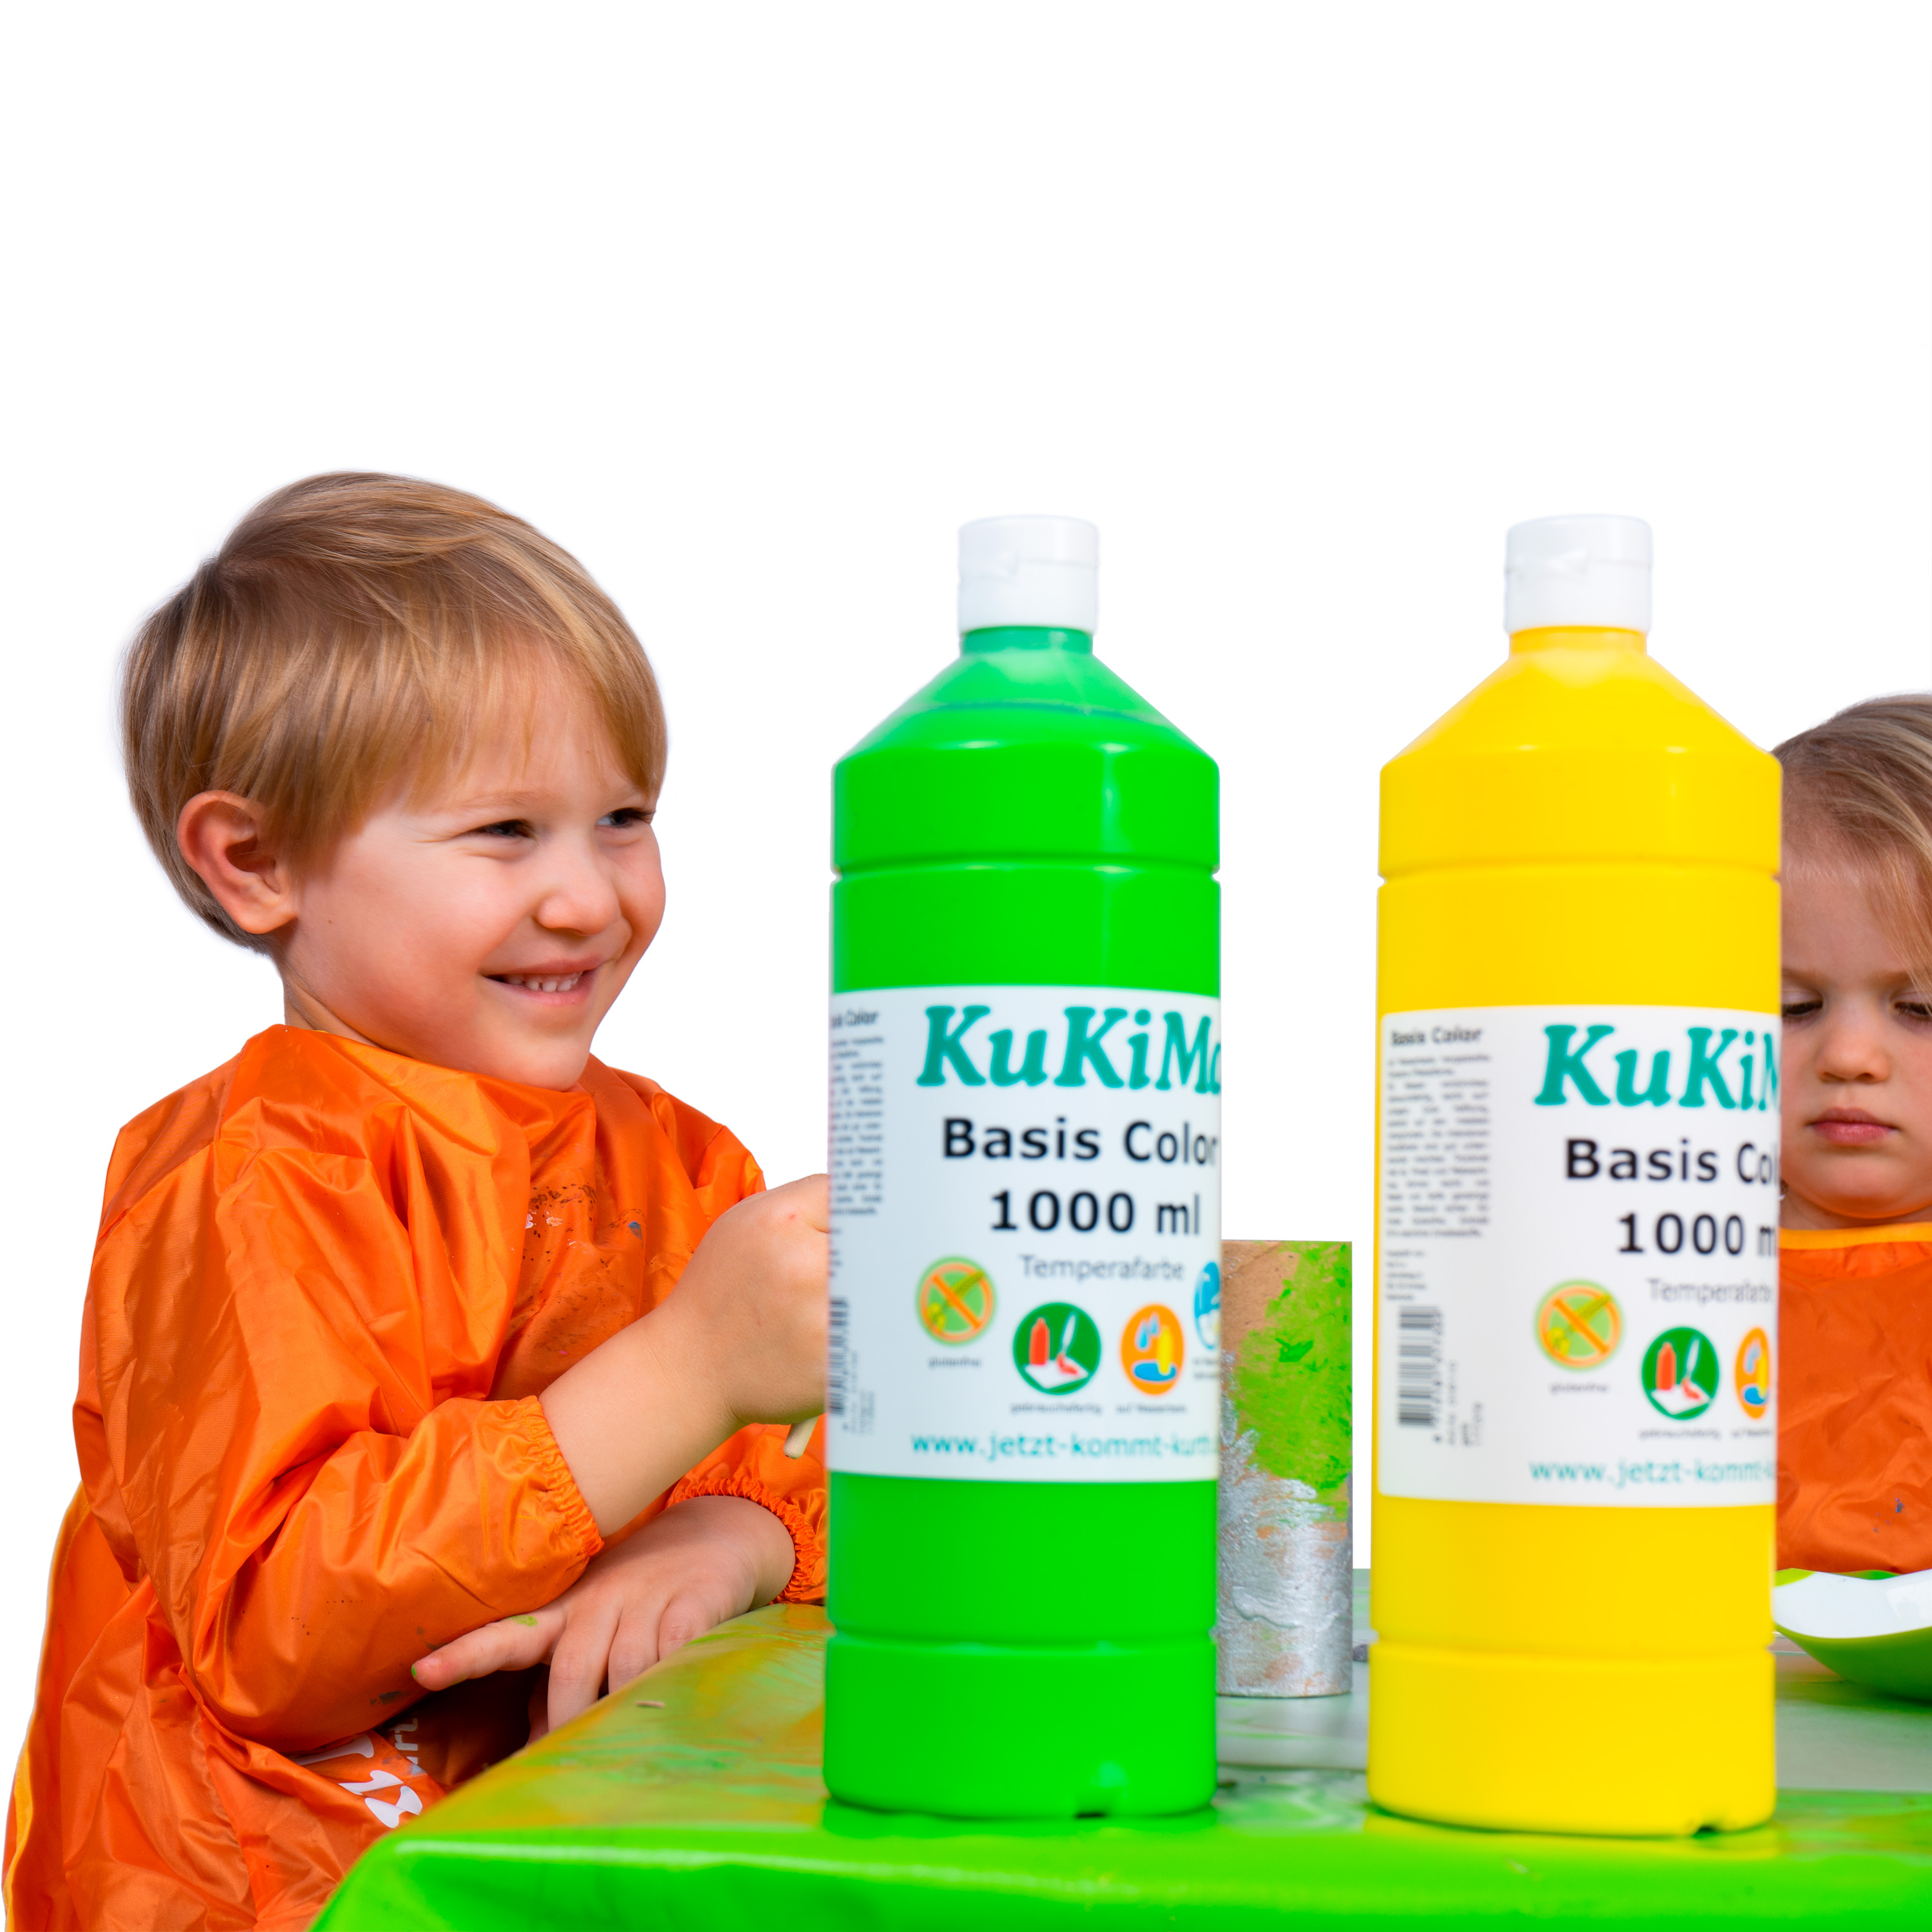 KuKiMa Basis Color 'Komplett-Set', 14 Farben à 1000 ml